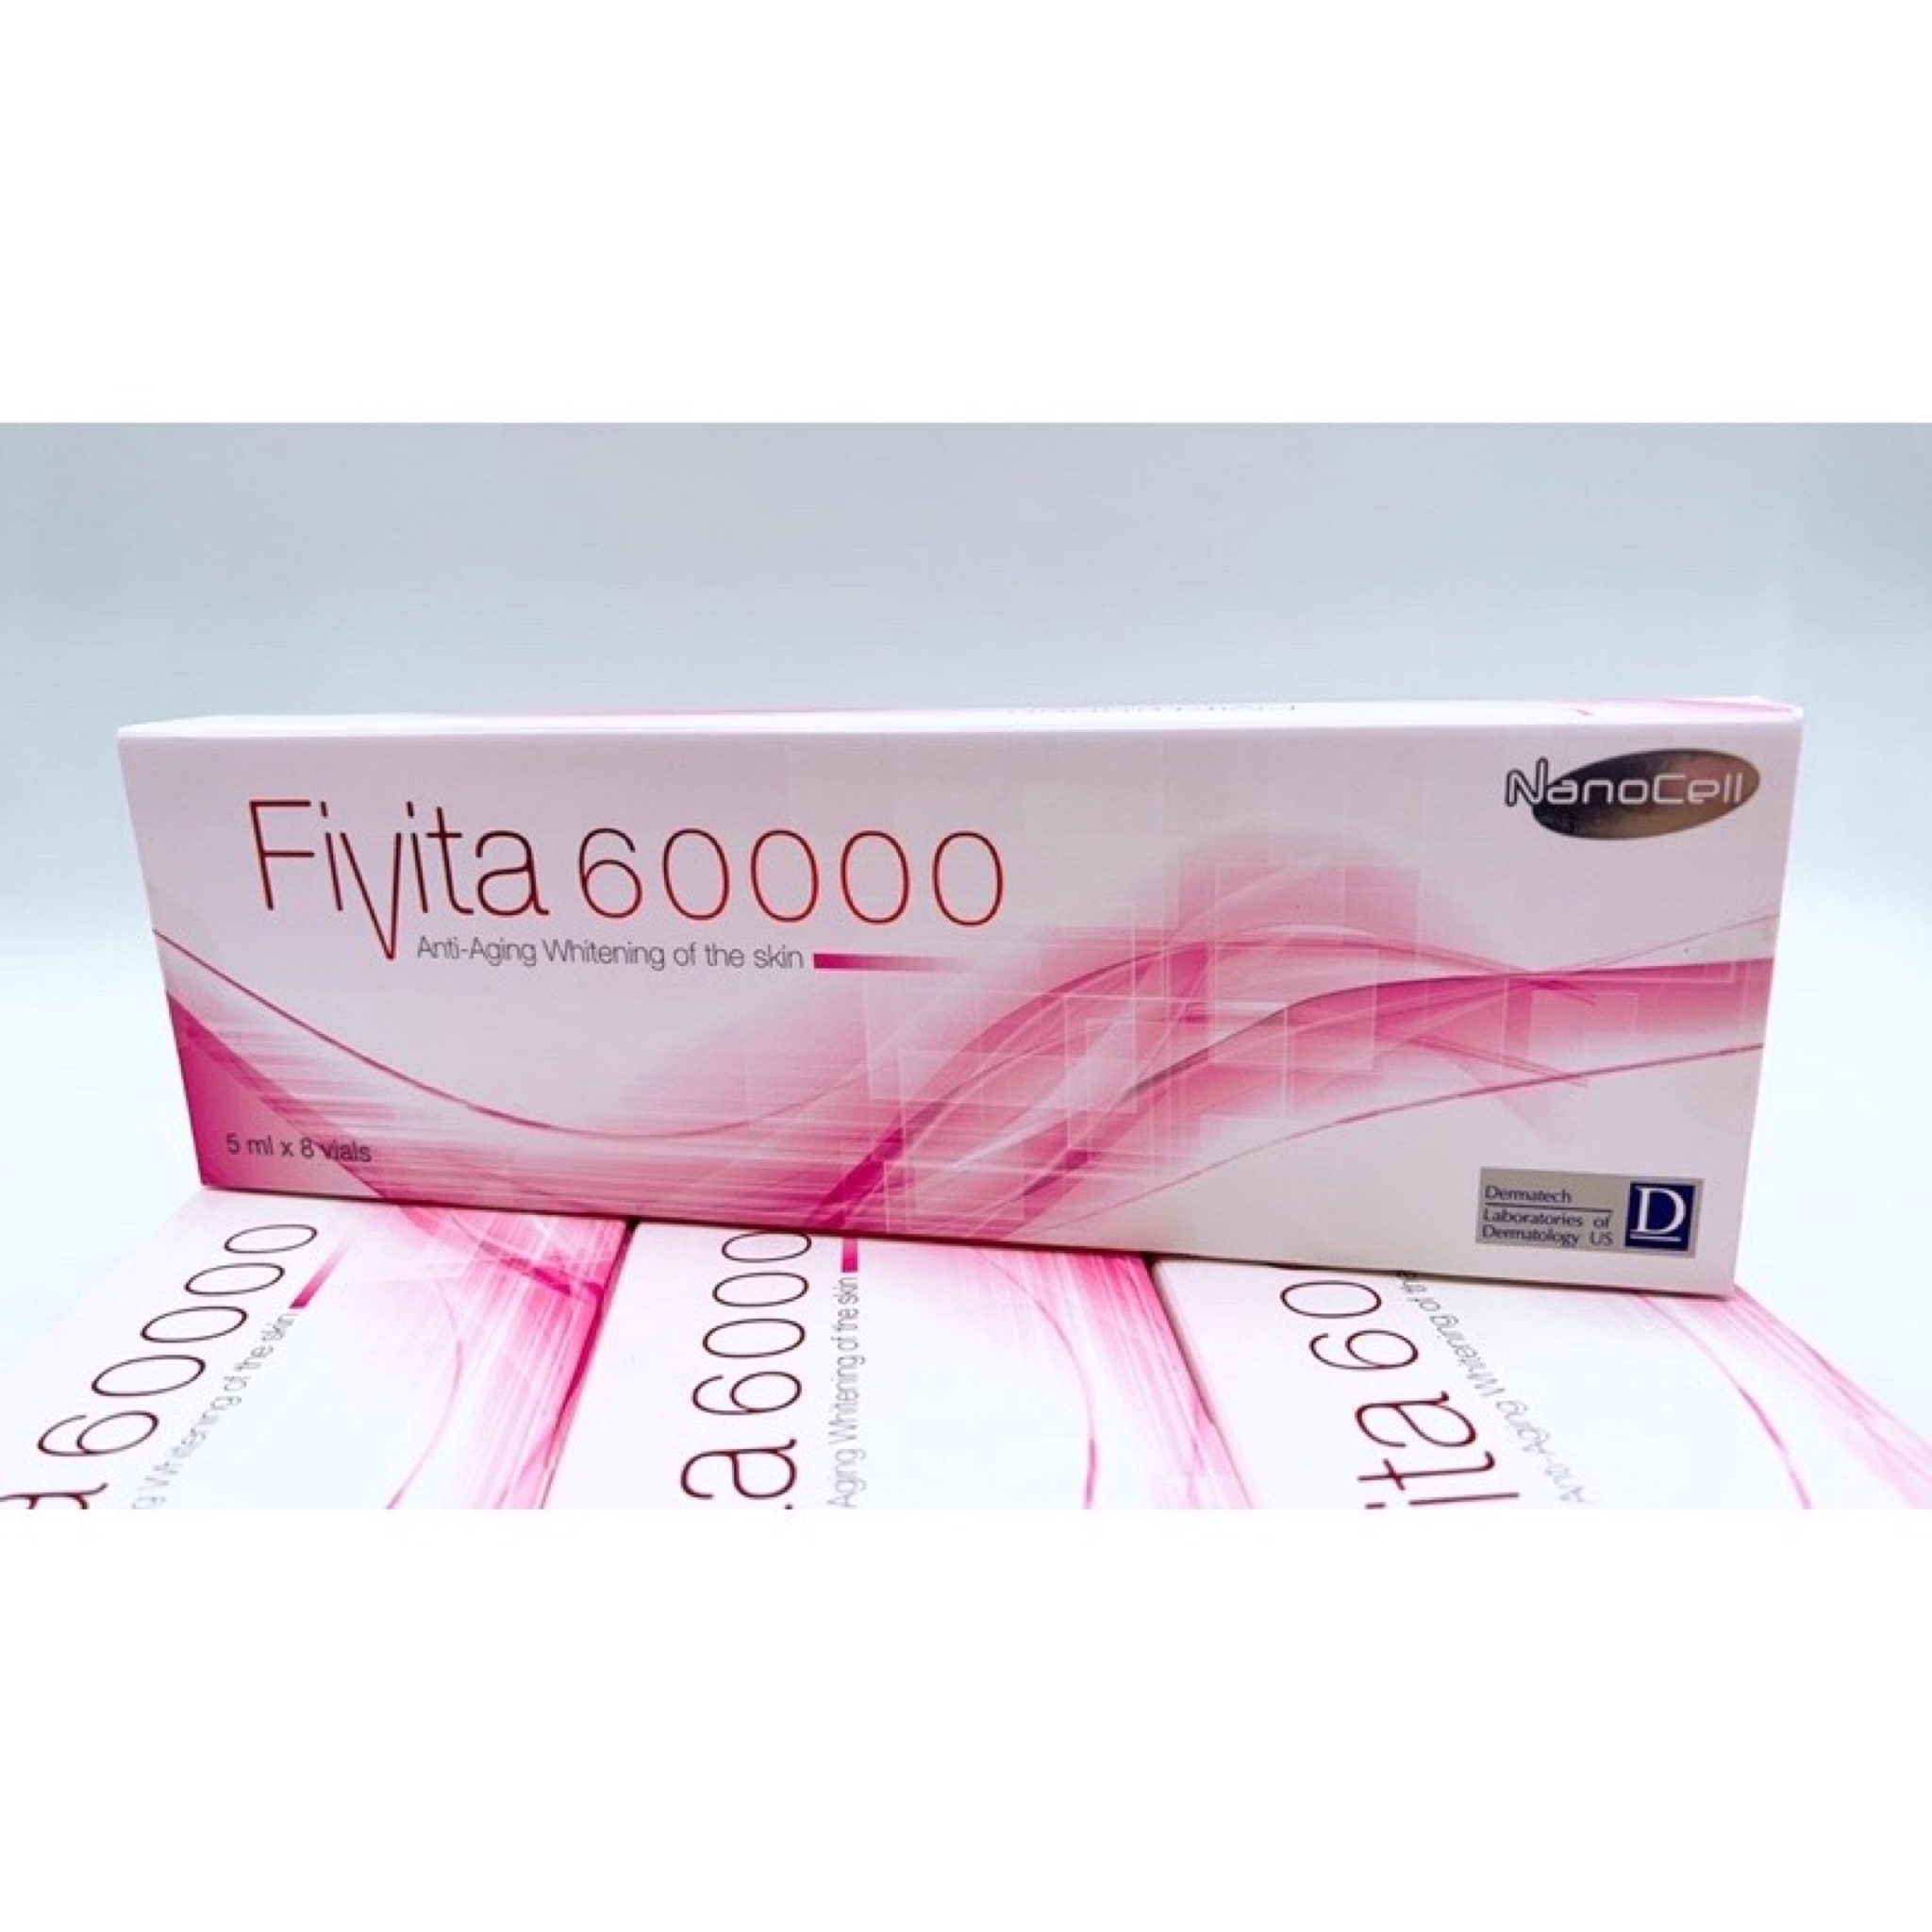 Fivita 60000 (USA)